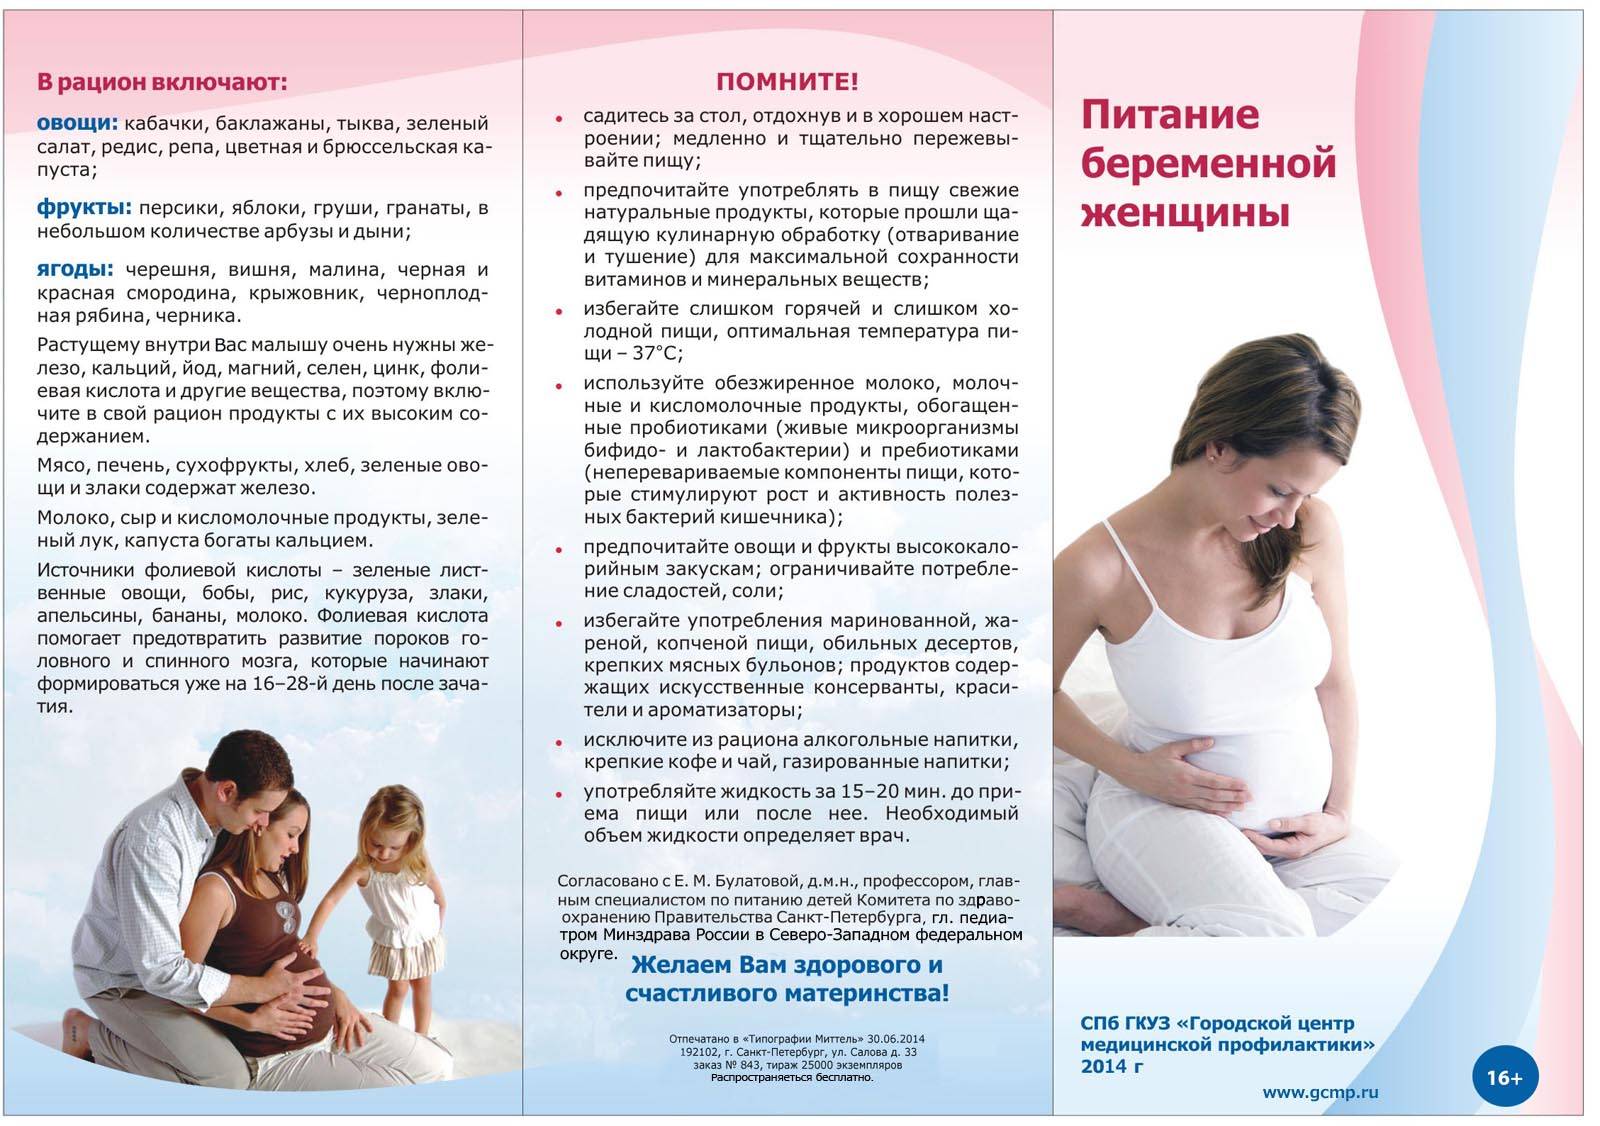 Беременная жена: инструкция по обращению для мужей